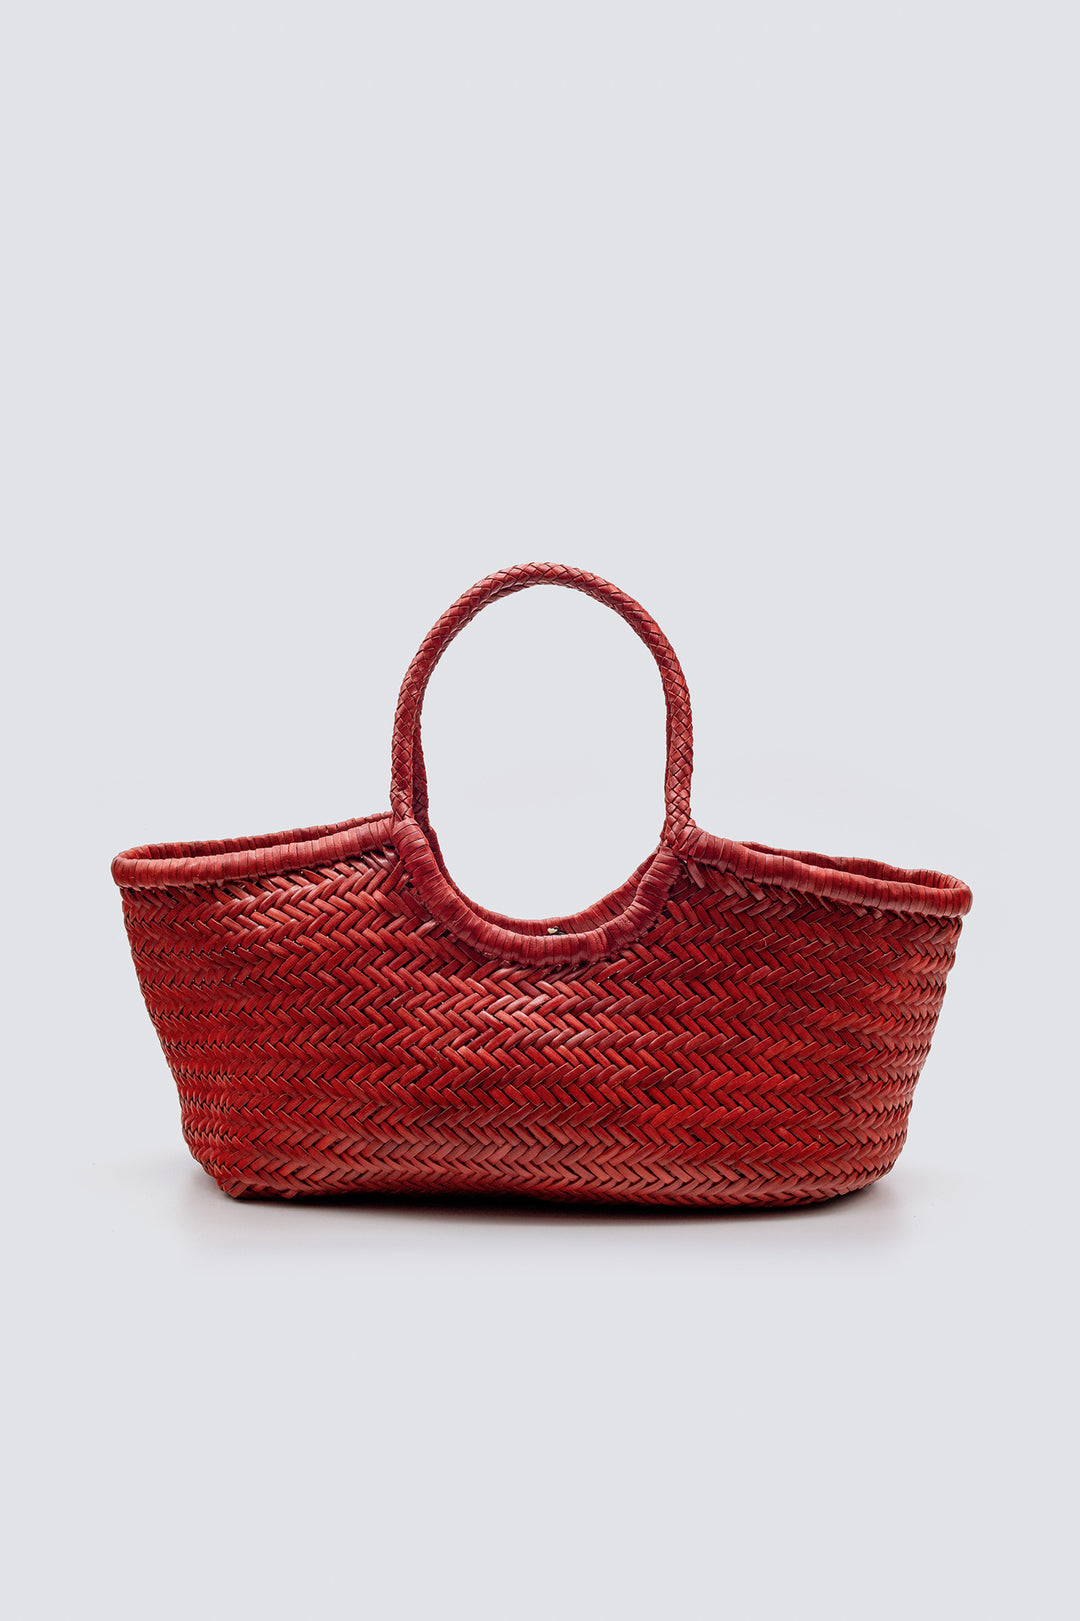 Dragon Diffusion woven leather bag handmade - Nantucket Big Red